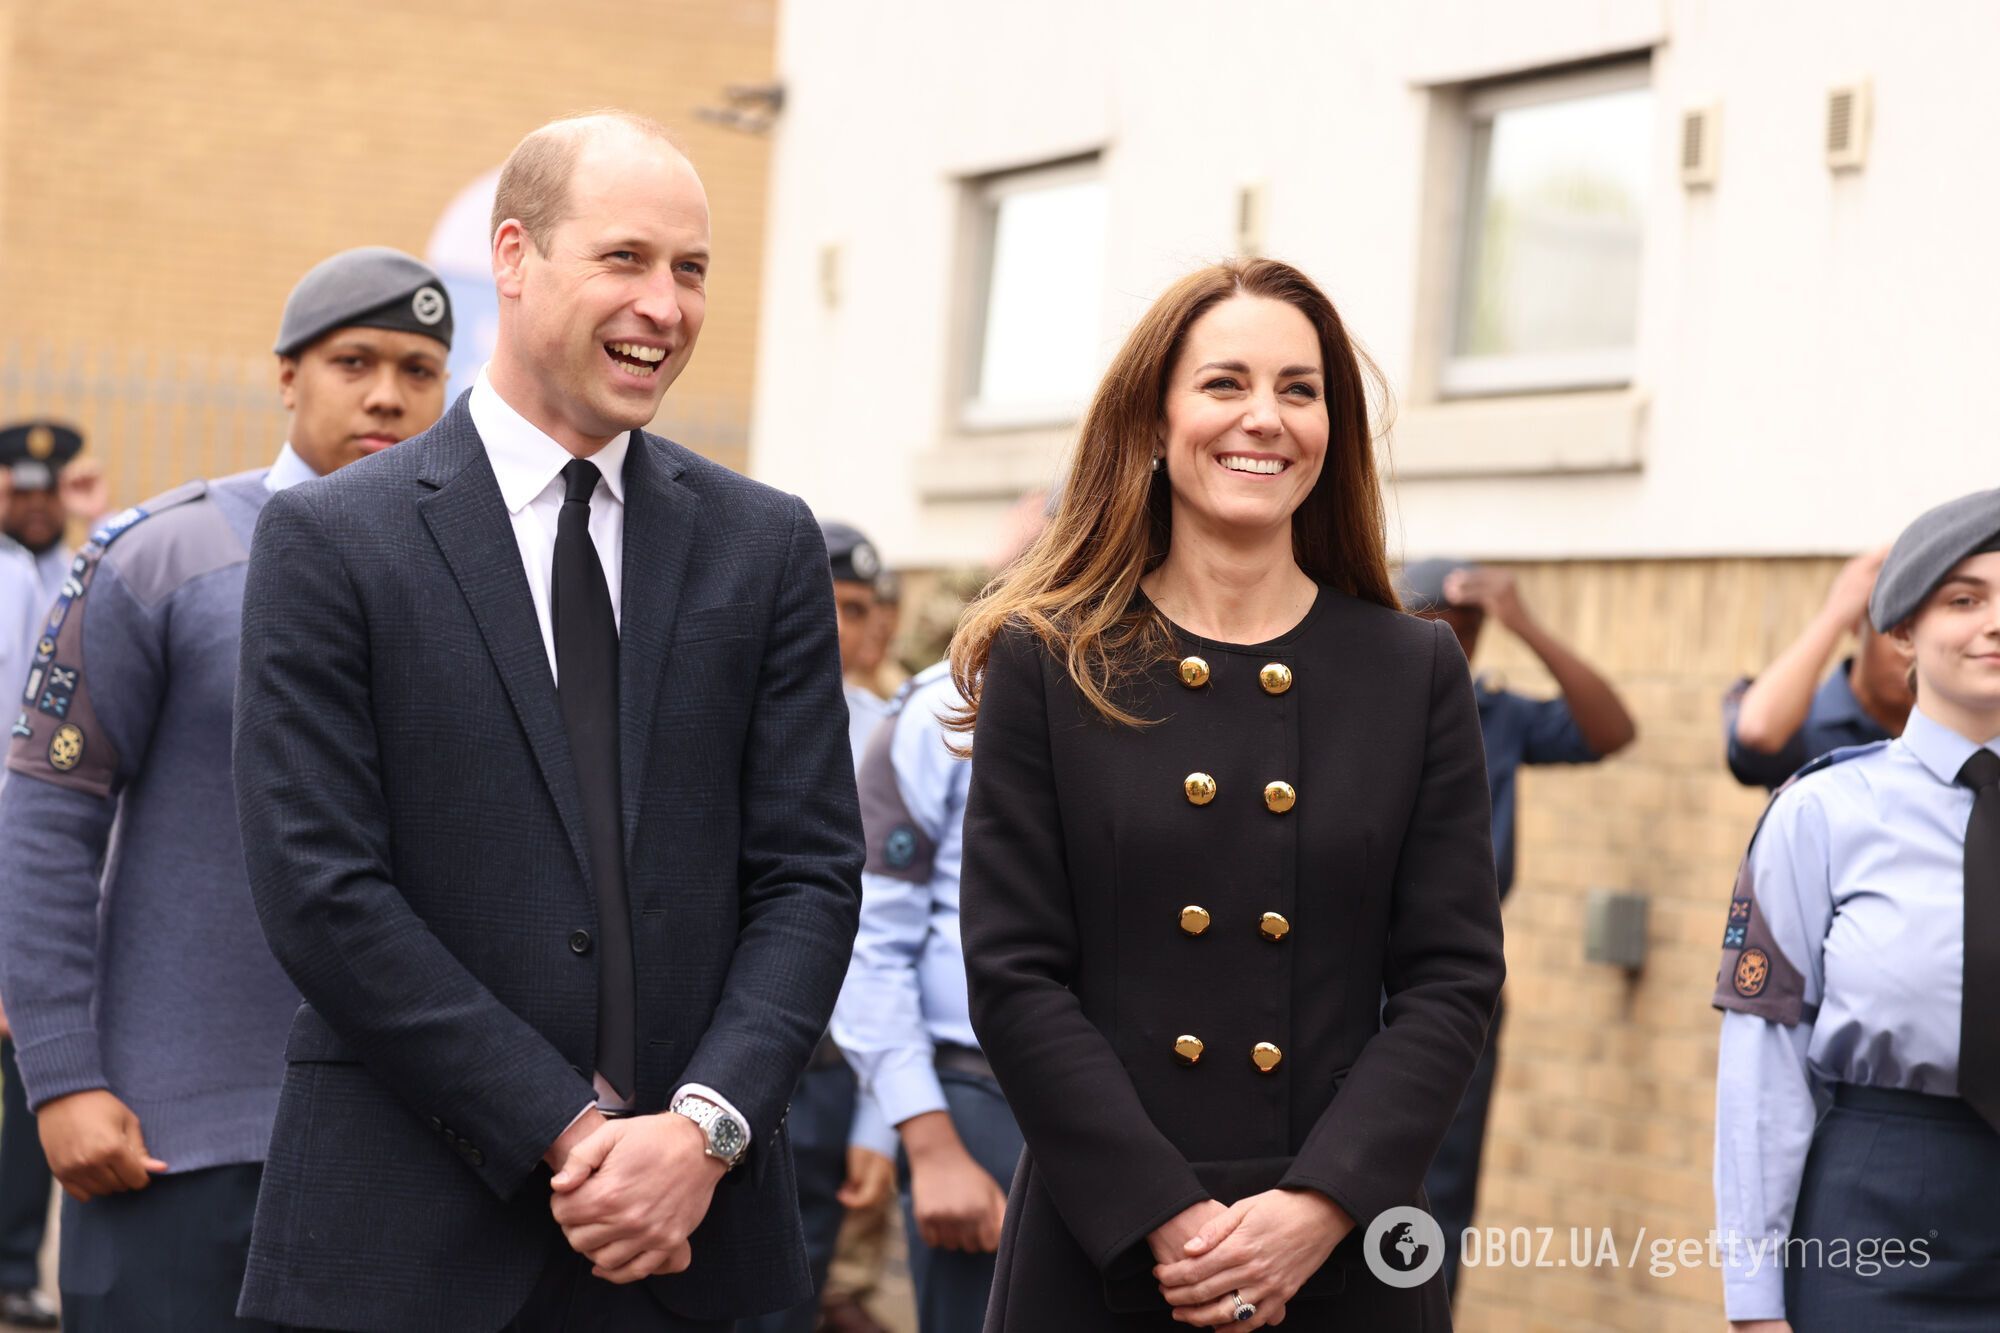 Кейт Миддлтон и принц Уильям вышли в свет после похорон.